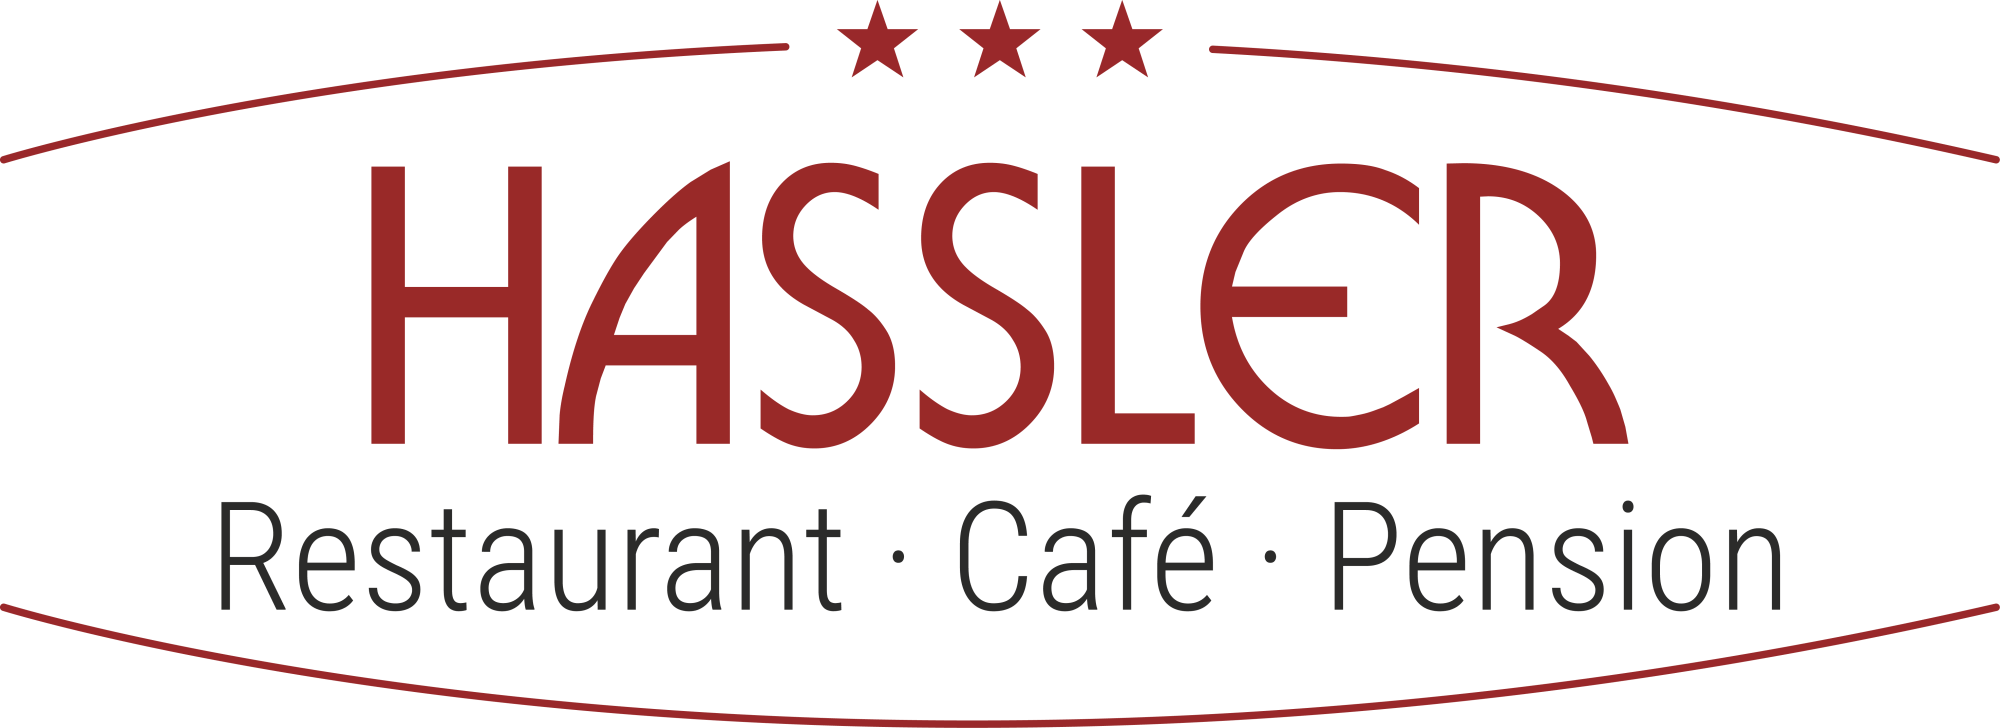 HASSLER *** Restaurant · Café · Pension 